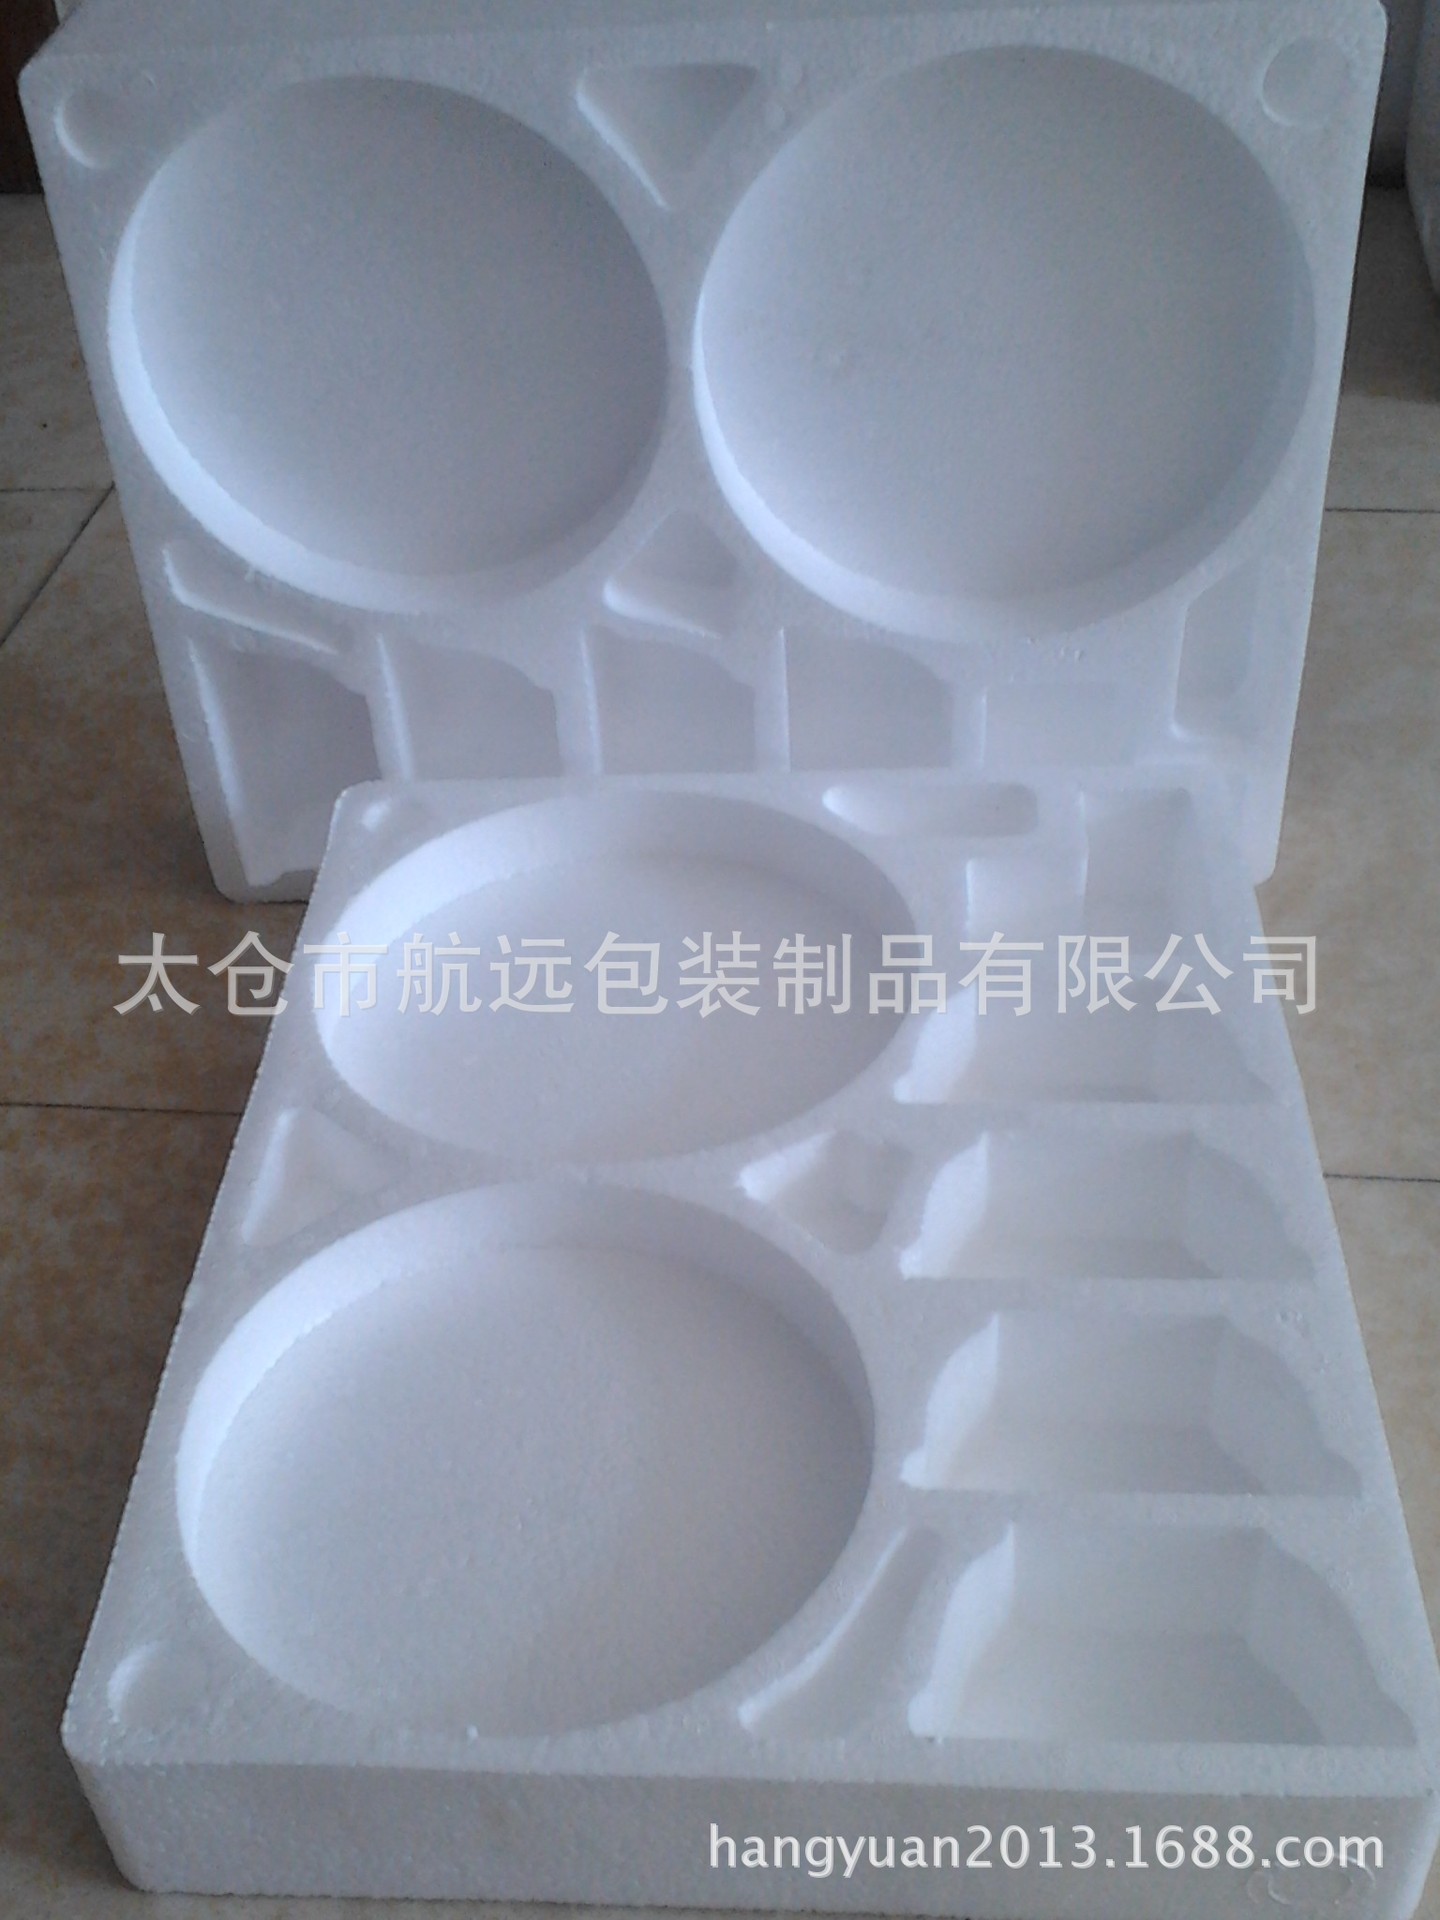 专业生产eps成型泡沫,陶瓷包装